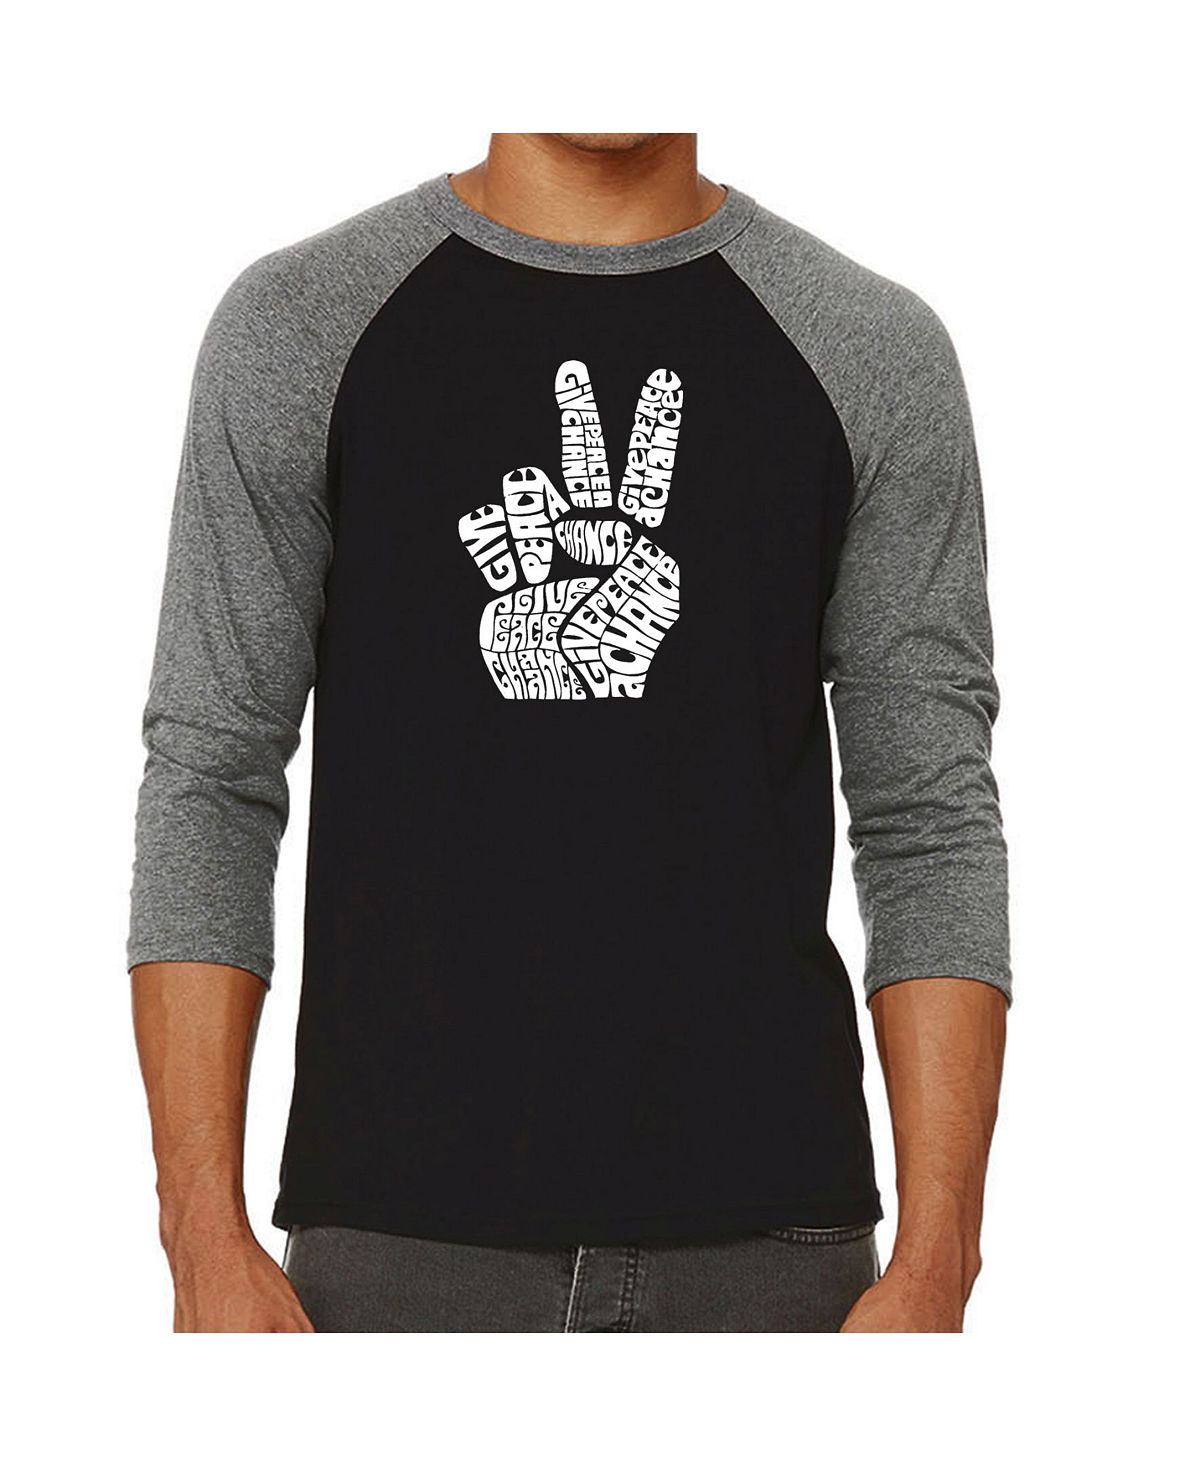 Мужская футболка с регланом word art peace fingers LA Pop Art, серый мужская футболка с бейсбольным регланом word art t rex head la pop art мульти